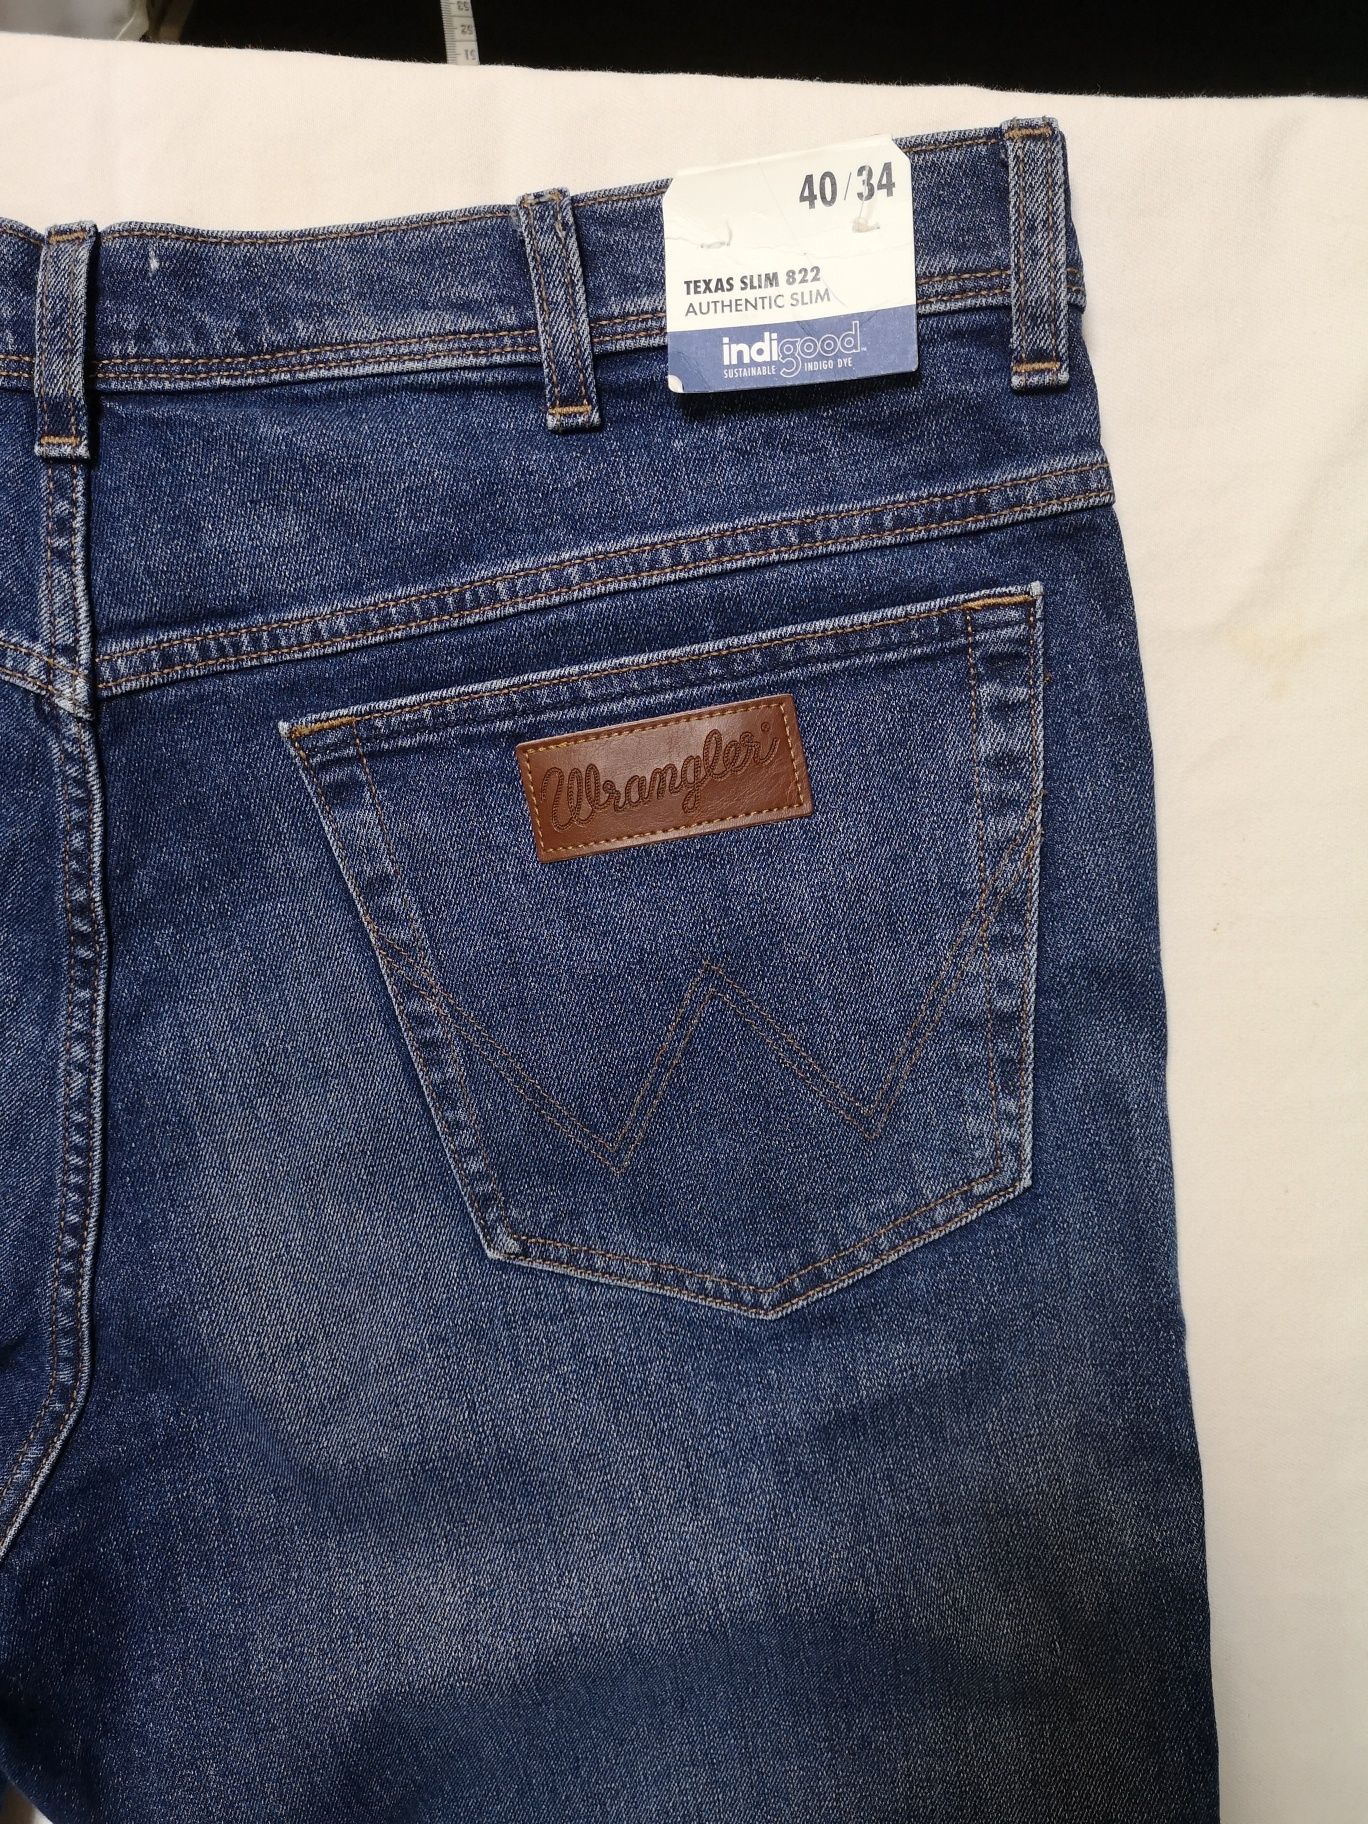 Wrangler jeans 40/30